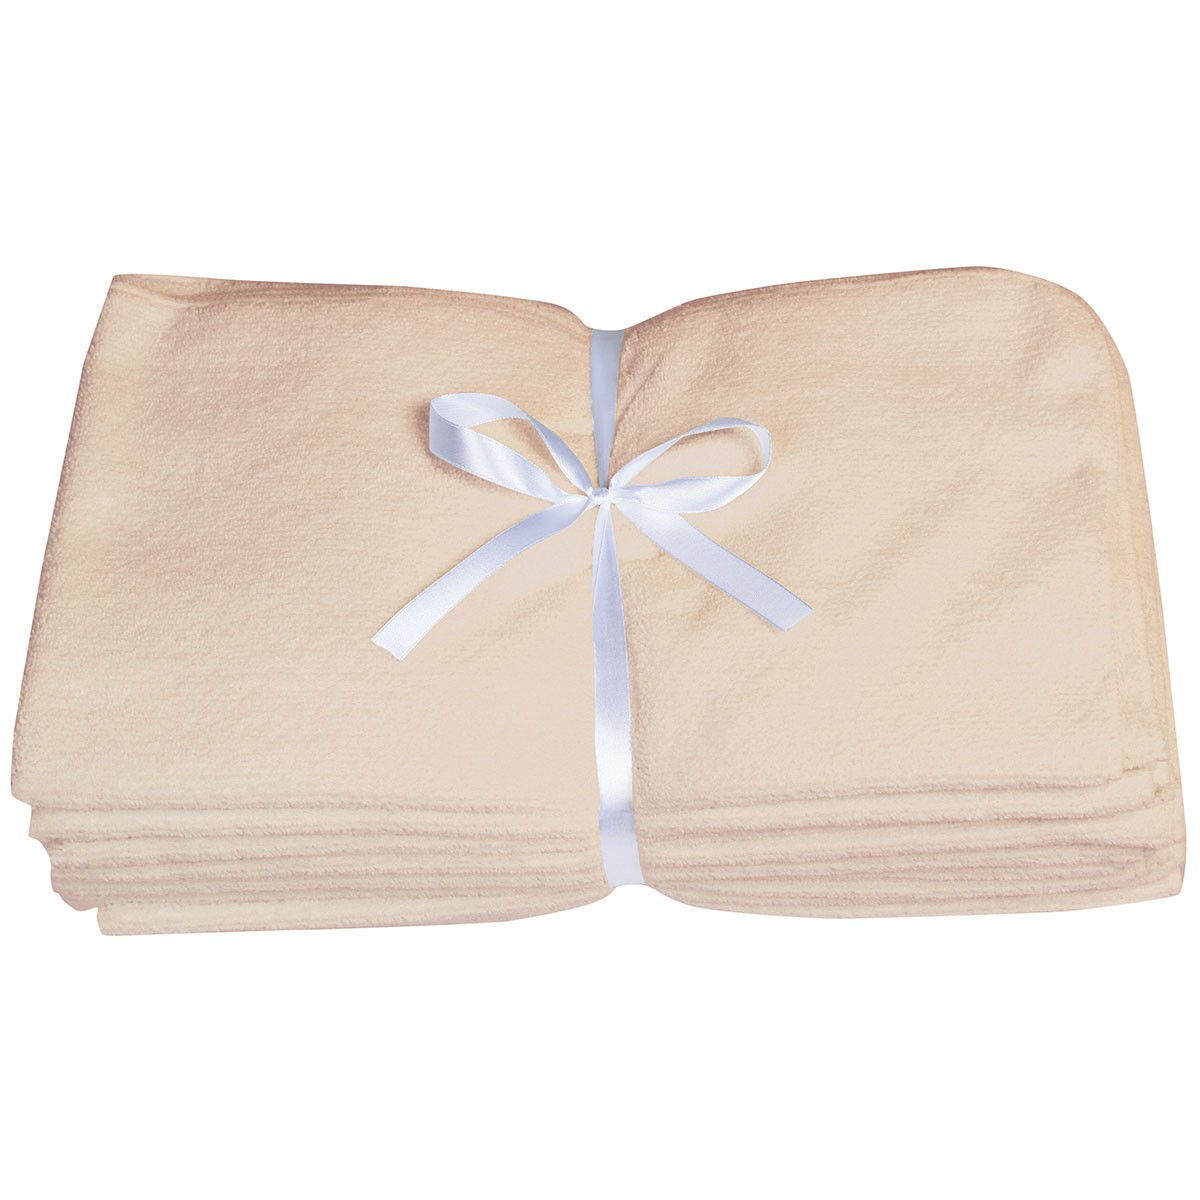 10PCS Original Microfiber 16x27 (Salon / Facial / Hand) Towels / 3PCS 24x48 Bath Towels